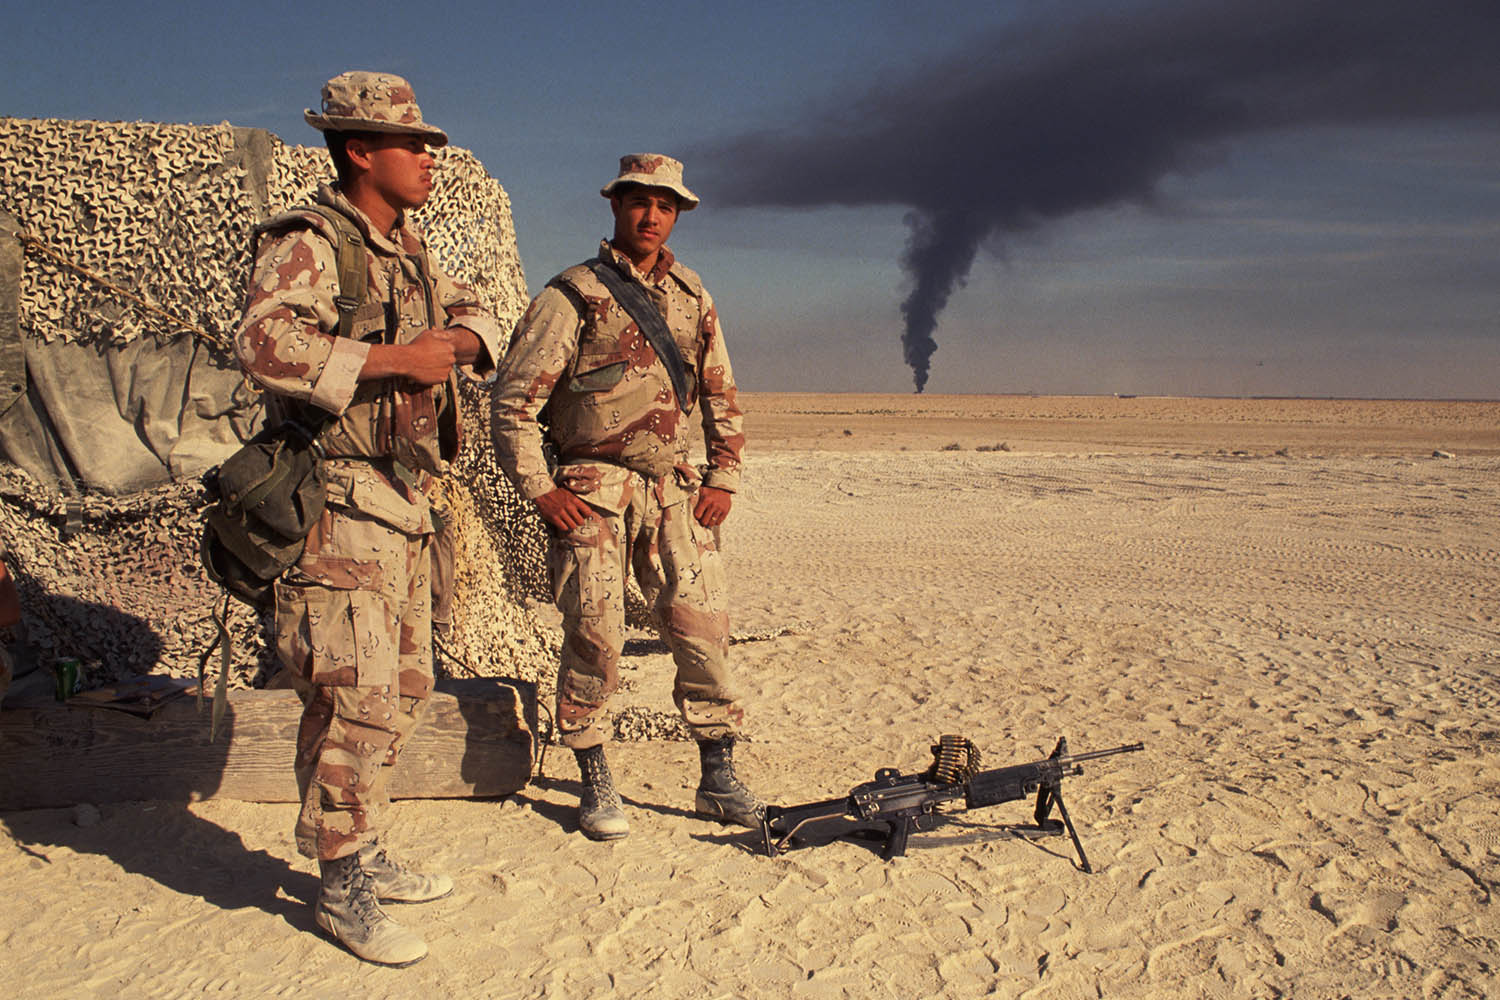  صورة لجنود المارينز الأمريكيين وهم يشاهدون دخانًا أسود  يتصاعد من حريق يندلع من إحدى المنشآت النفطية بعد هجوم العراق على حقول النفط الكويتية خلال شهر كانون الثاني/يناير 1991.